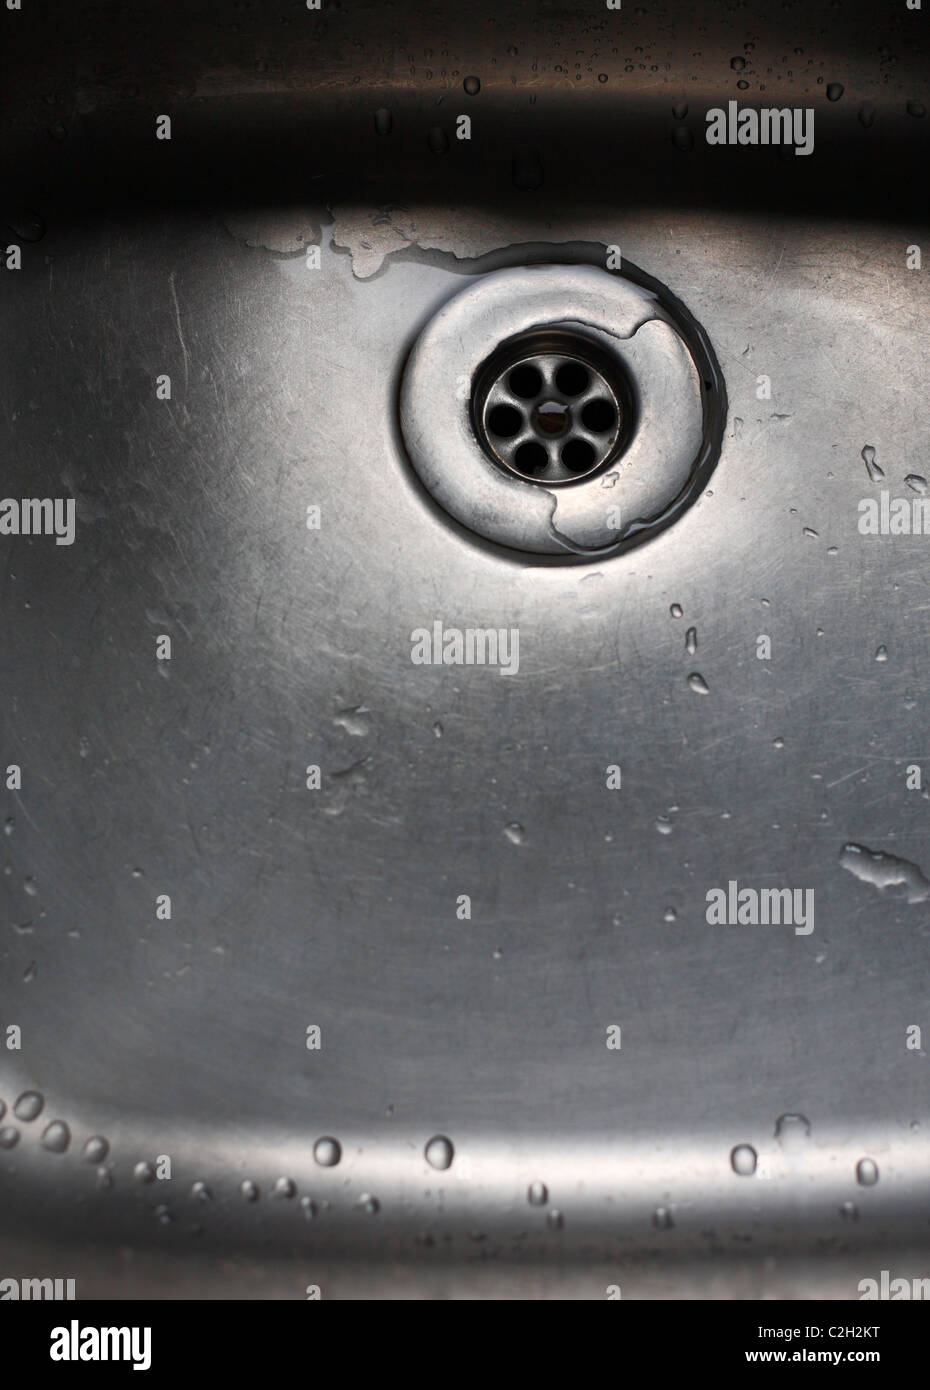 Fregadero de acero inoxidable y para desagües. Foto de stock